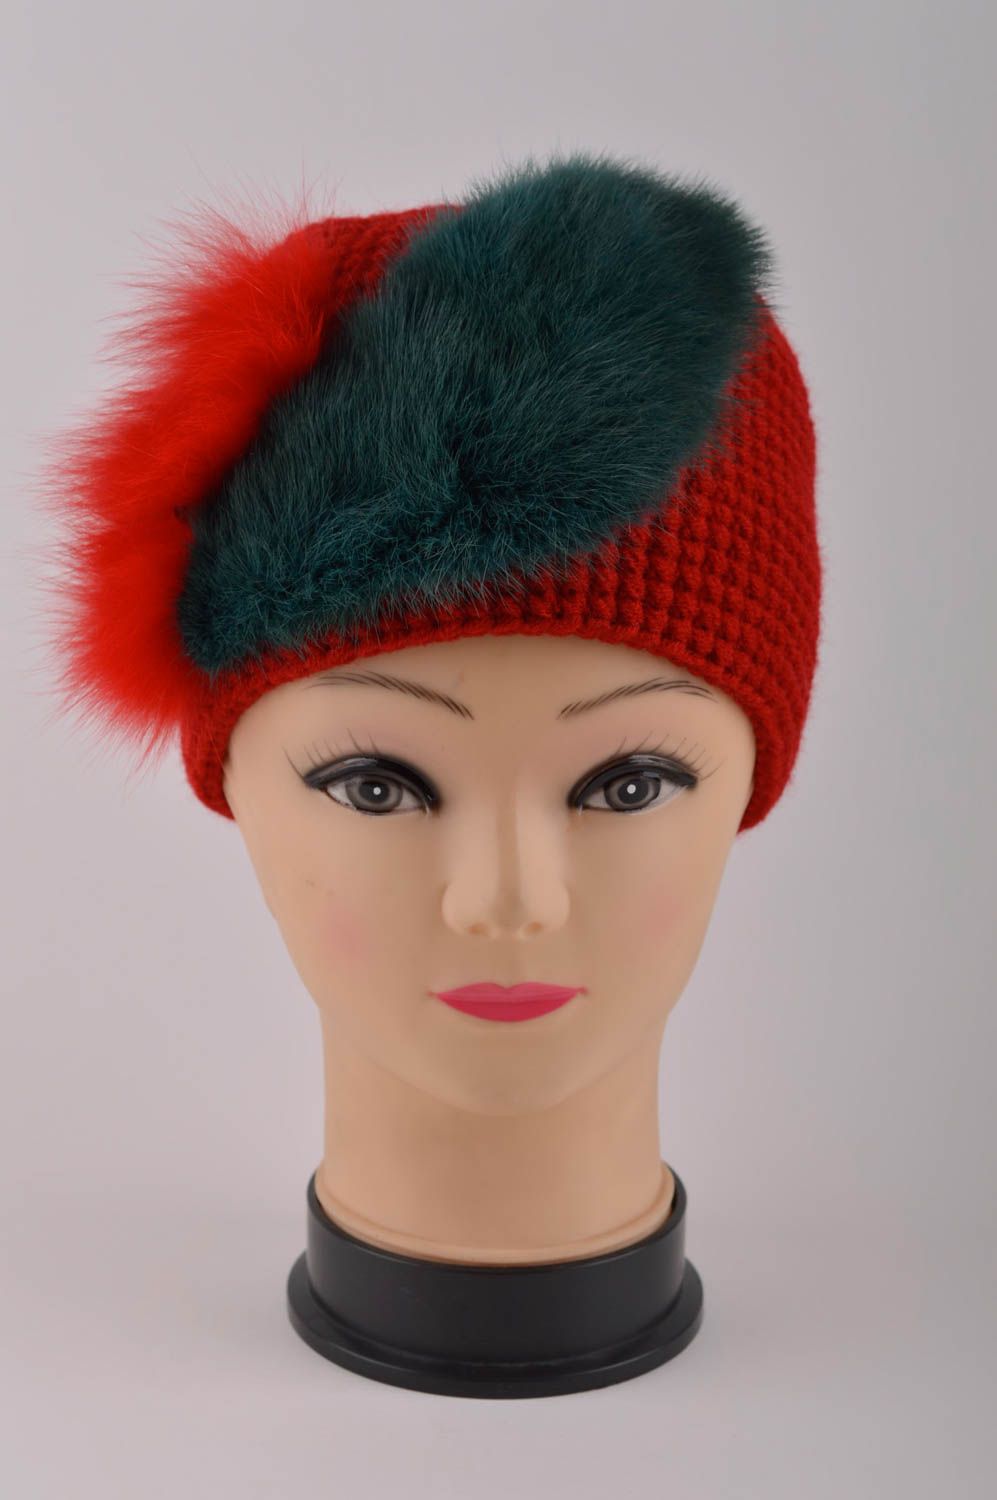 Handmade hat designer warm hat children hat woolen headwear gift ideas photo 3